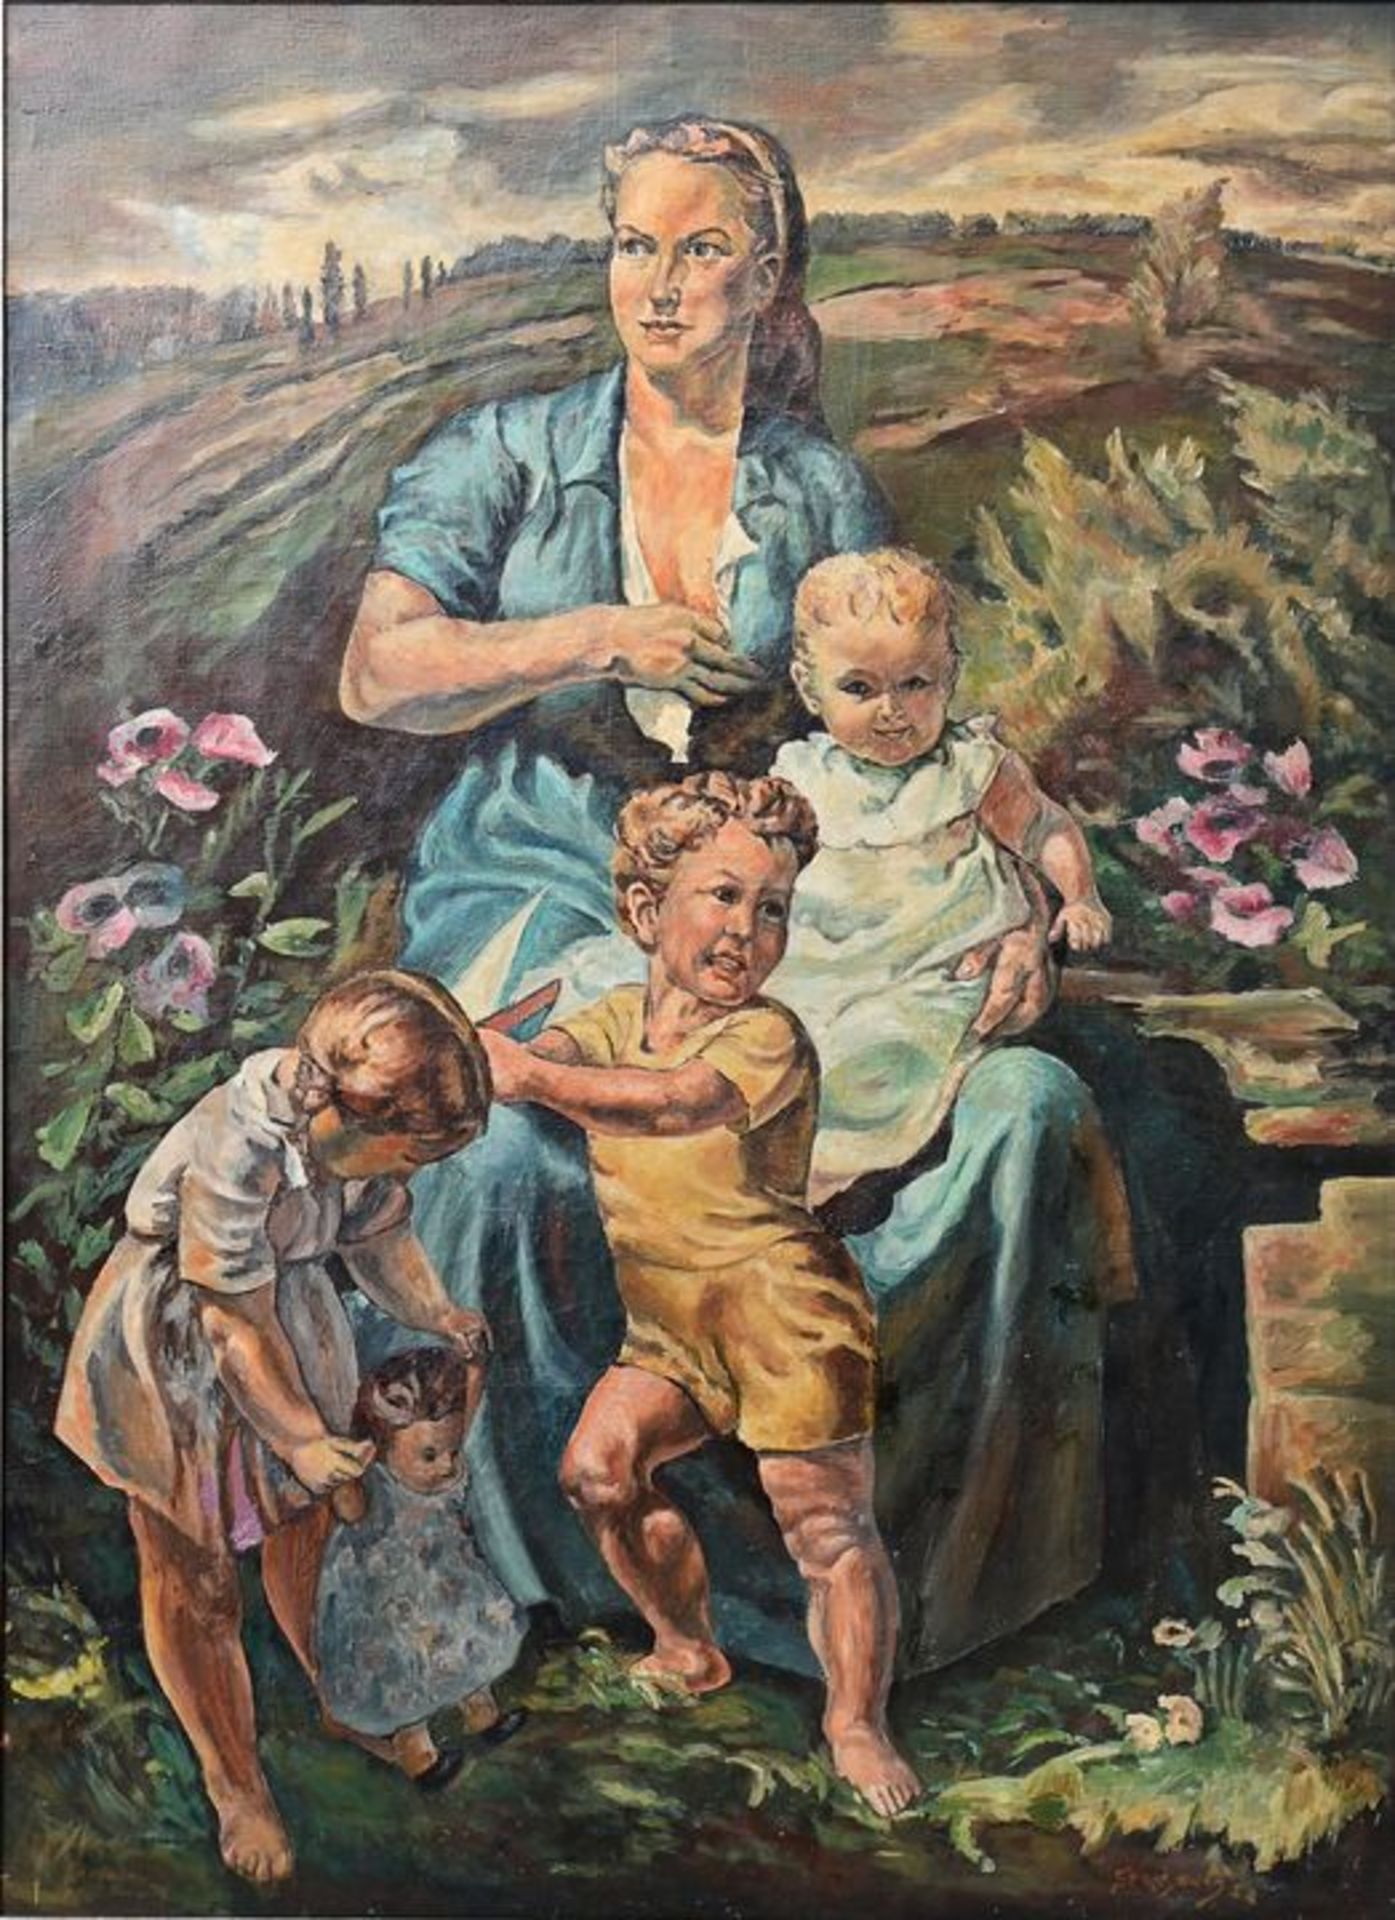 Kopie nach Heymann, Richard "In sicherer Hut" / copy after Heymann, Family portrait